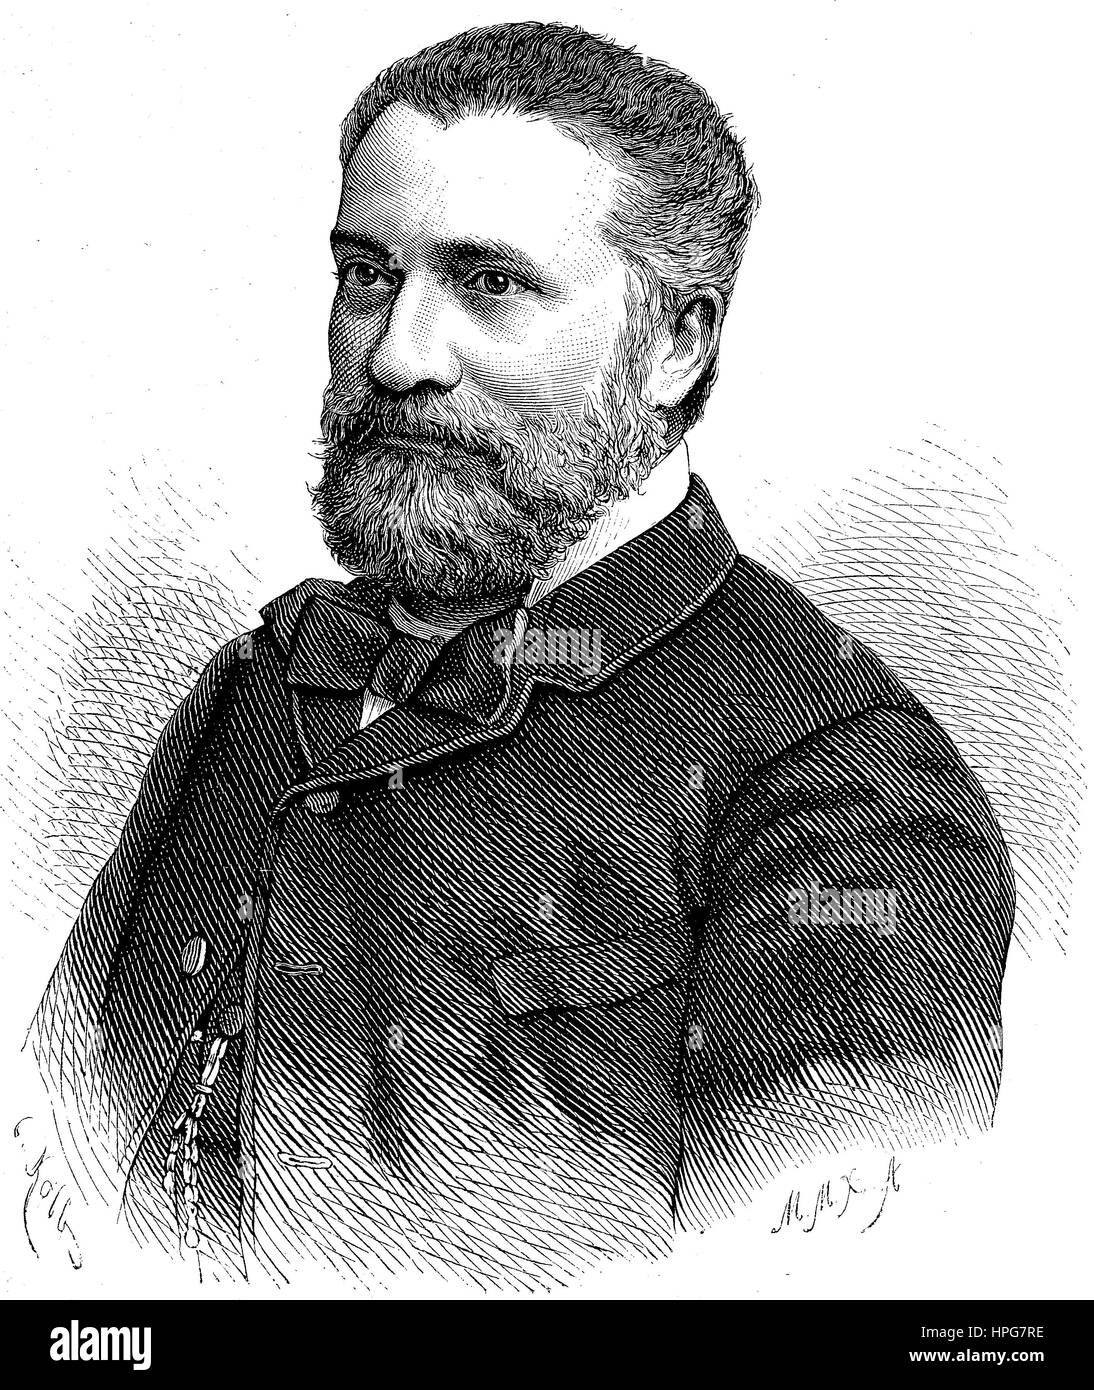 Giovanni Nicotera, 1828 - 1894, était un homme politique et patriote italien, l'amélioration numérique reproduction d'une gravure sur bois à partir de l'année 1885 Banque D'Images